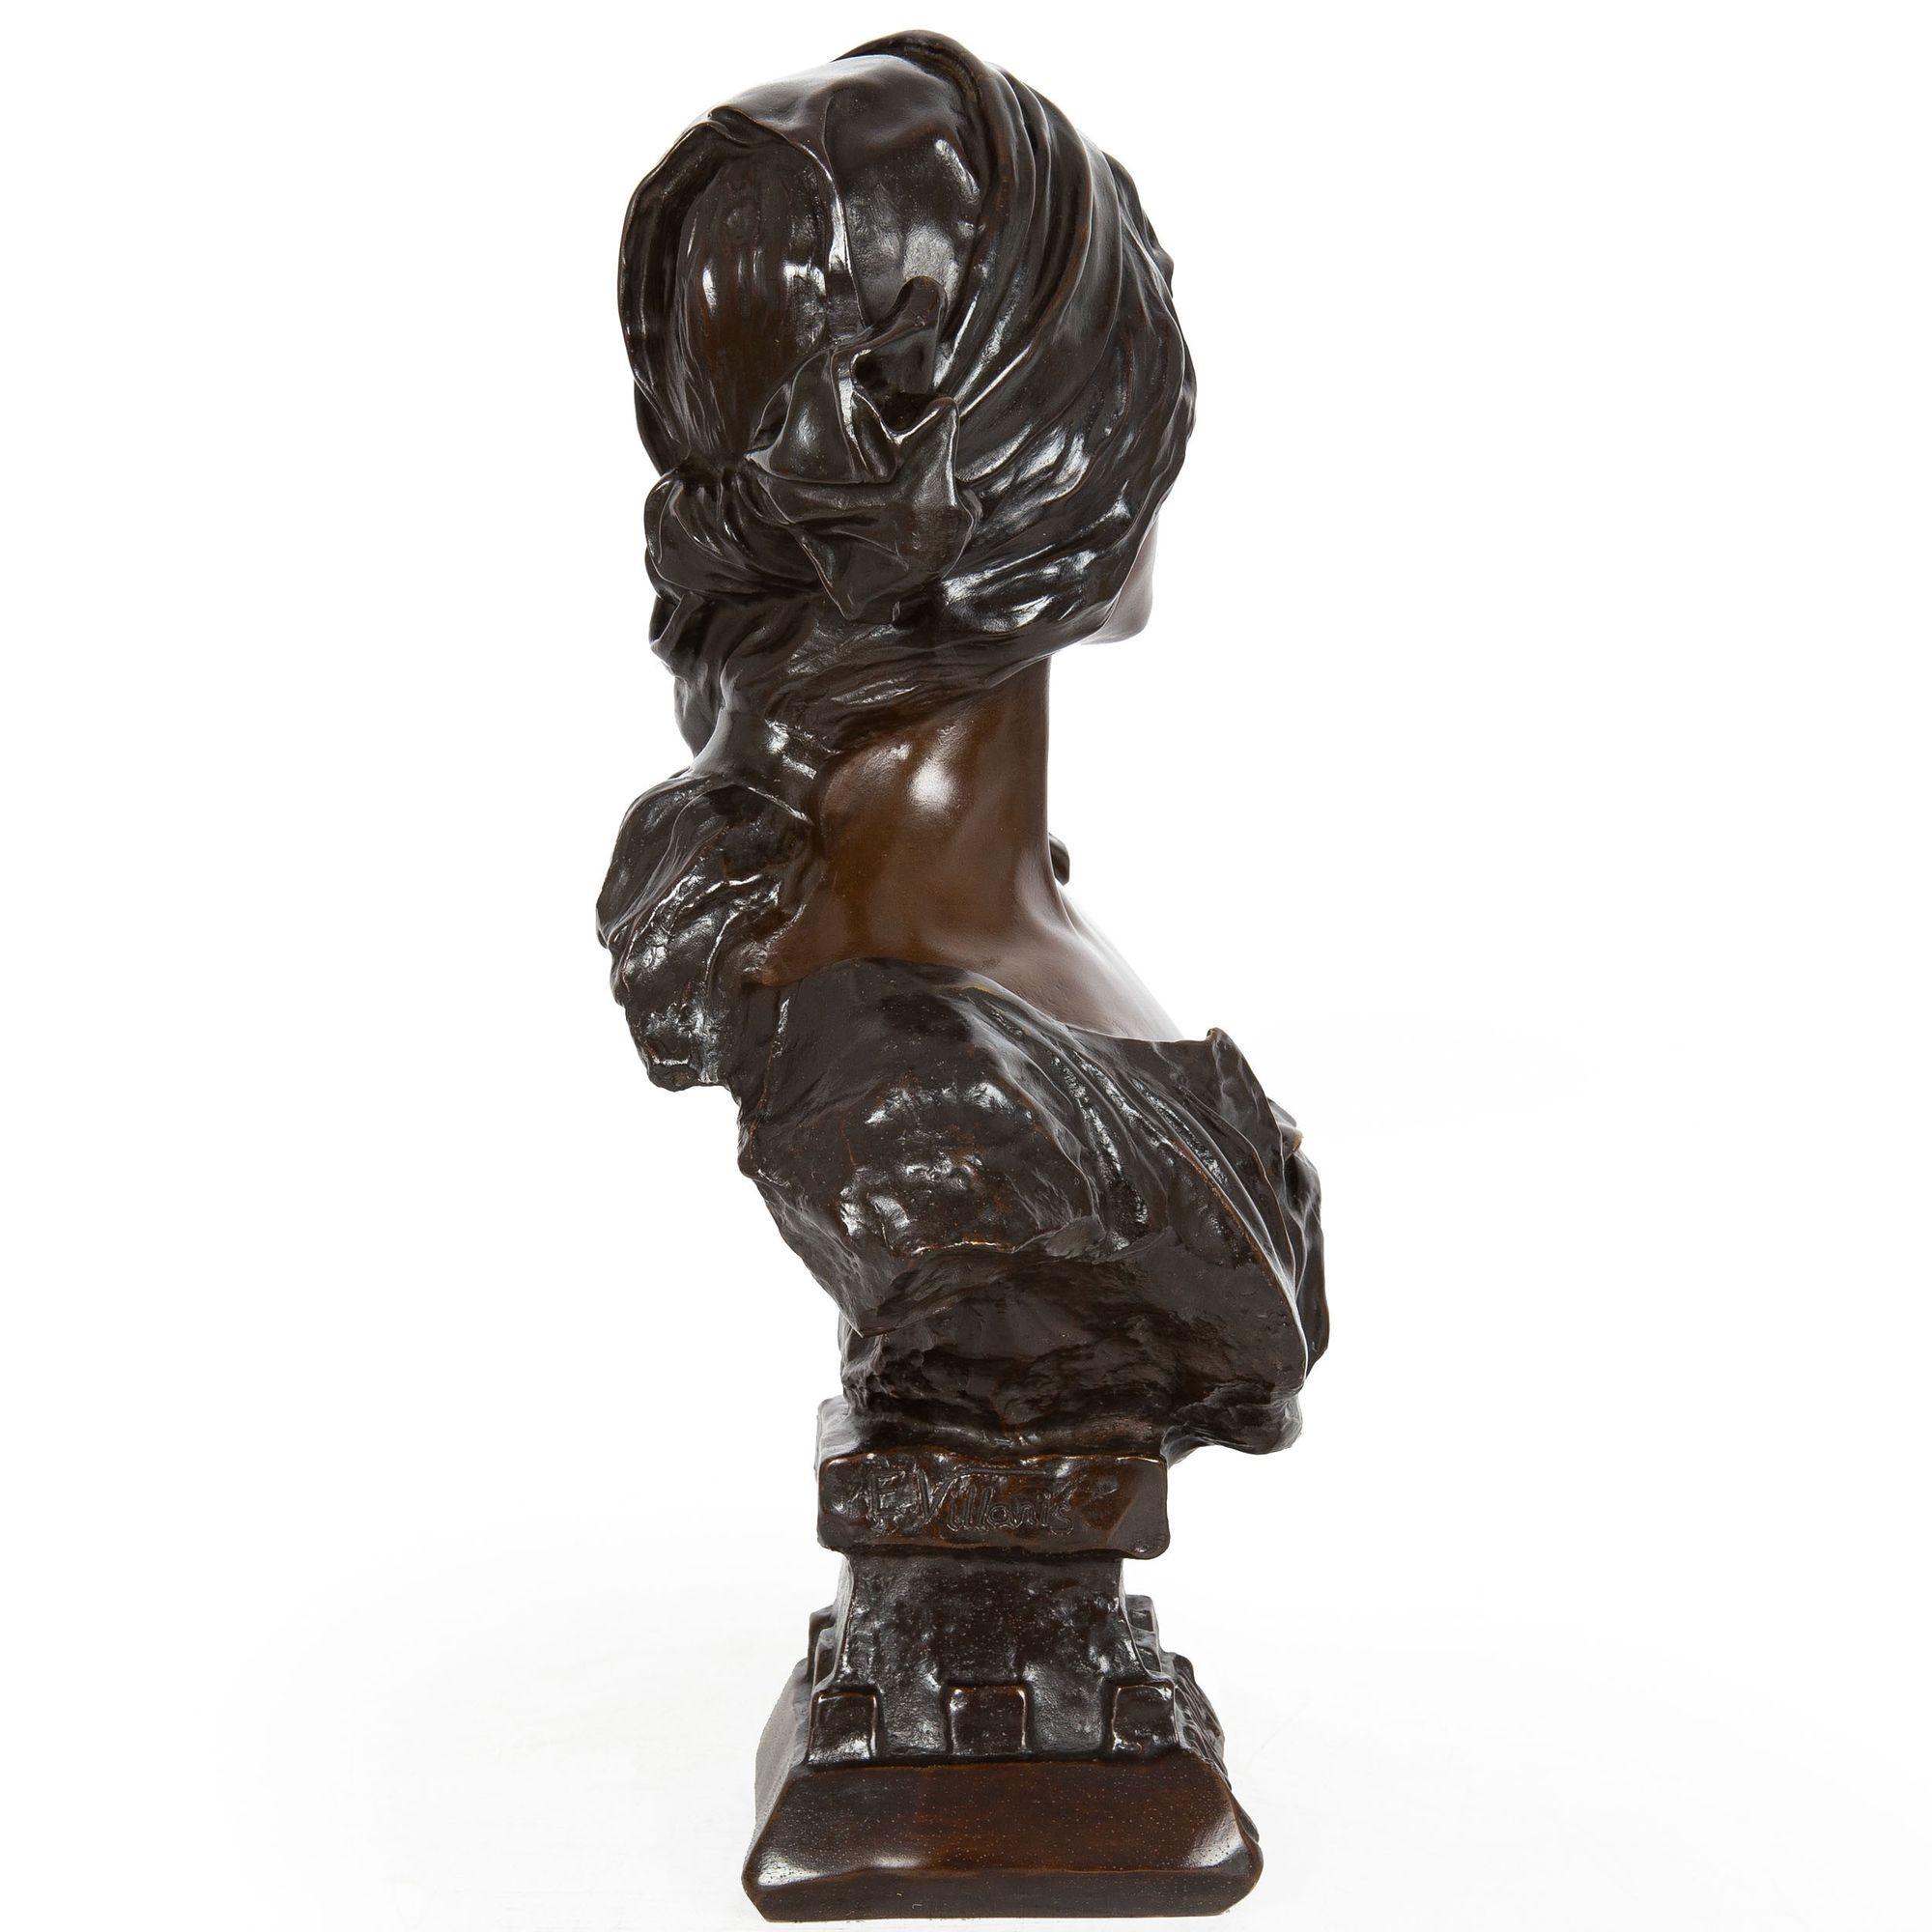 French Art Nouveau Bronze Sculpture “Cendrillon” or Cinderella by Emmanuel Villanis For Sale